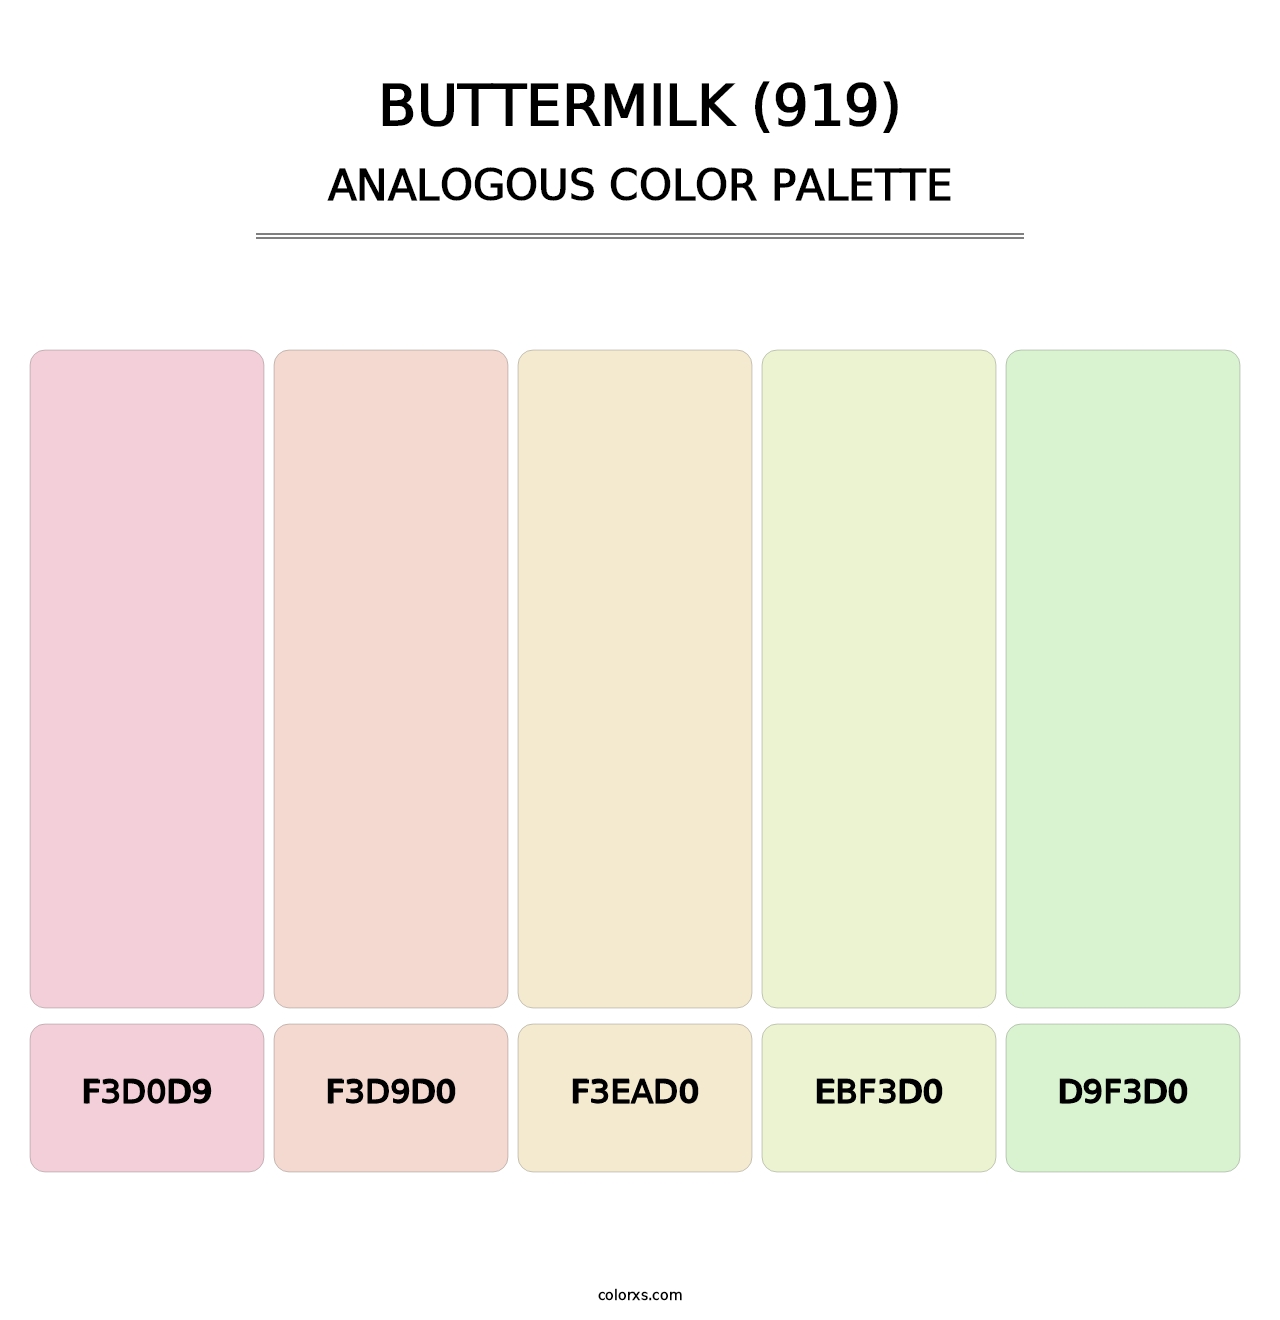 Buttermilk (919) - Analogous Color Palette